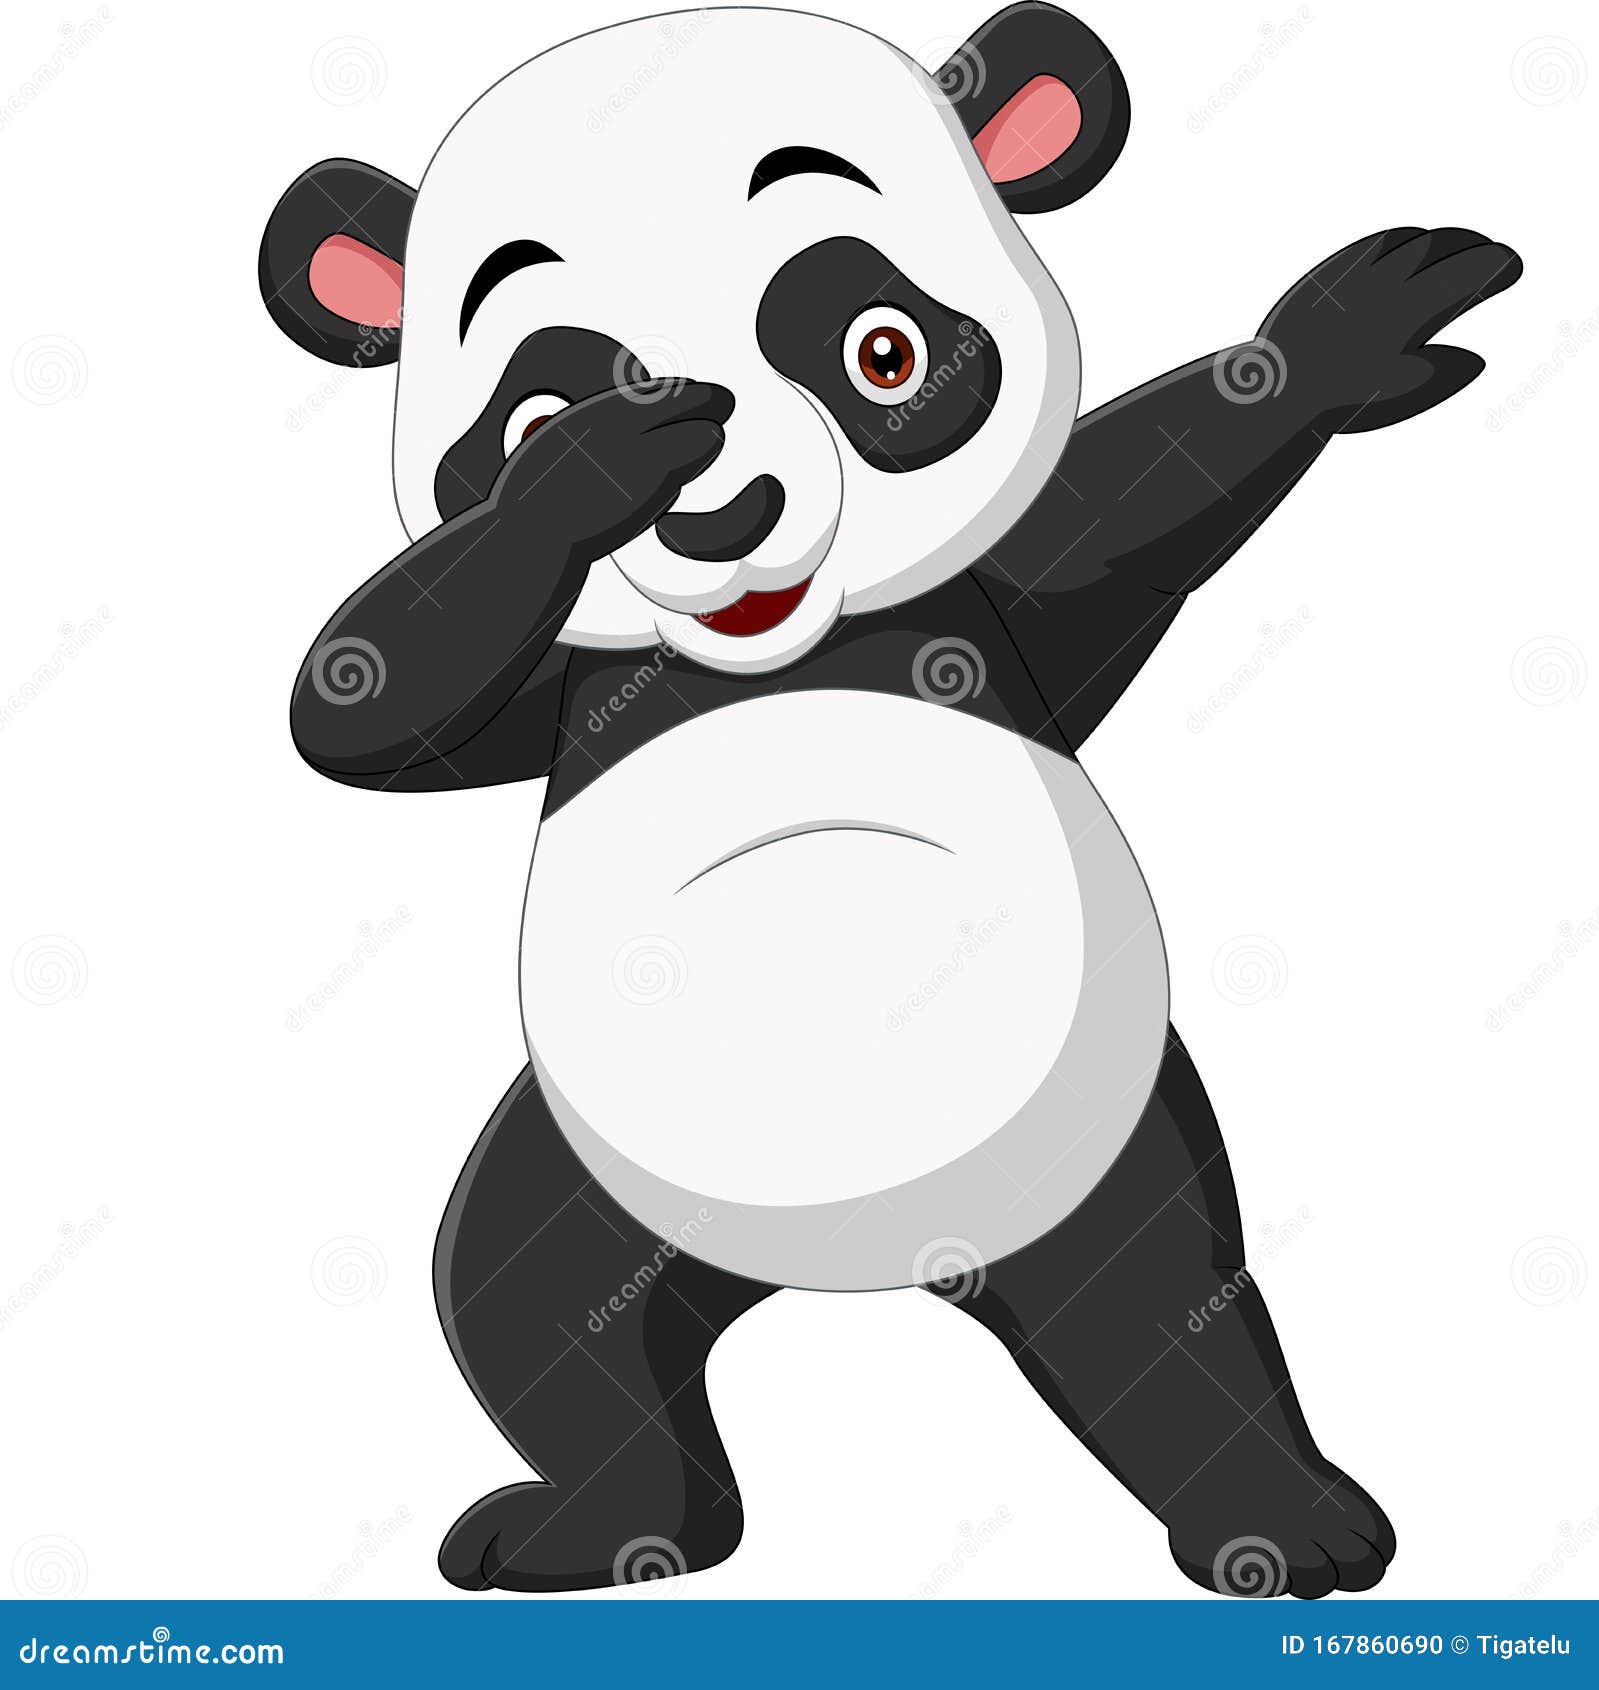 Cute Panda Cartoon in Dabbing Pose Stock Vector - Illustration of cartoon,  mascot: 167860690